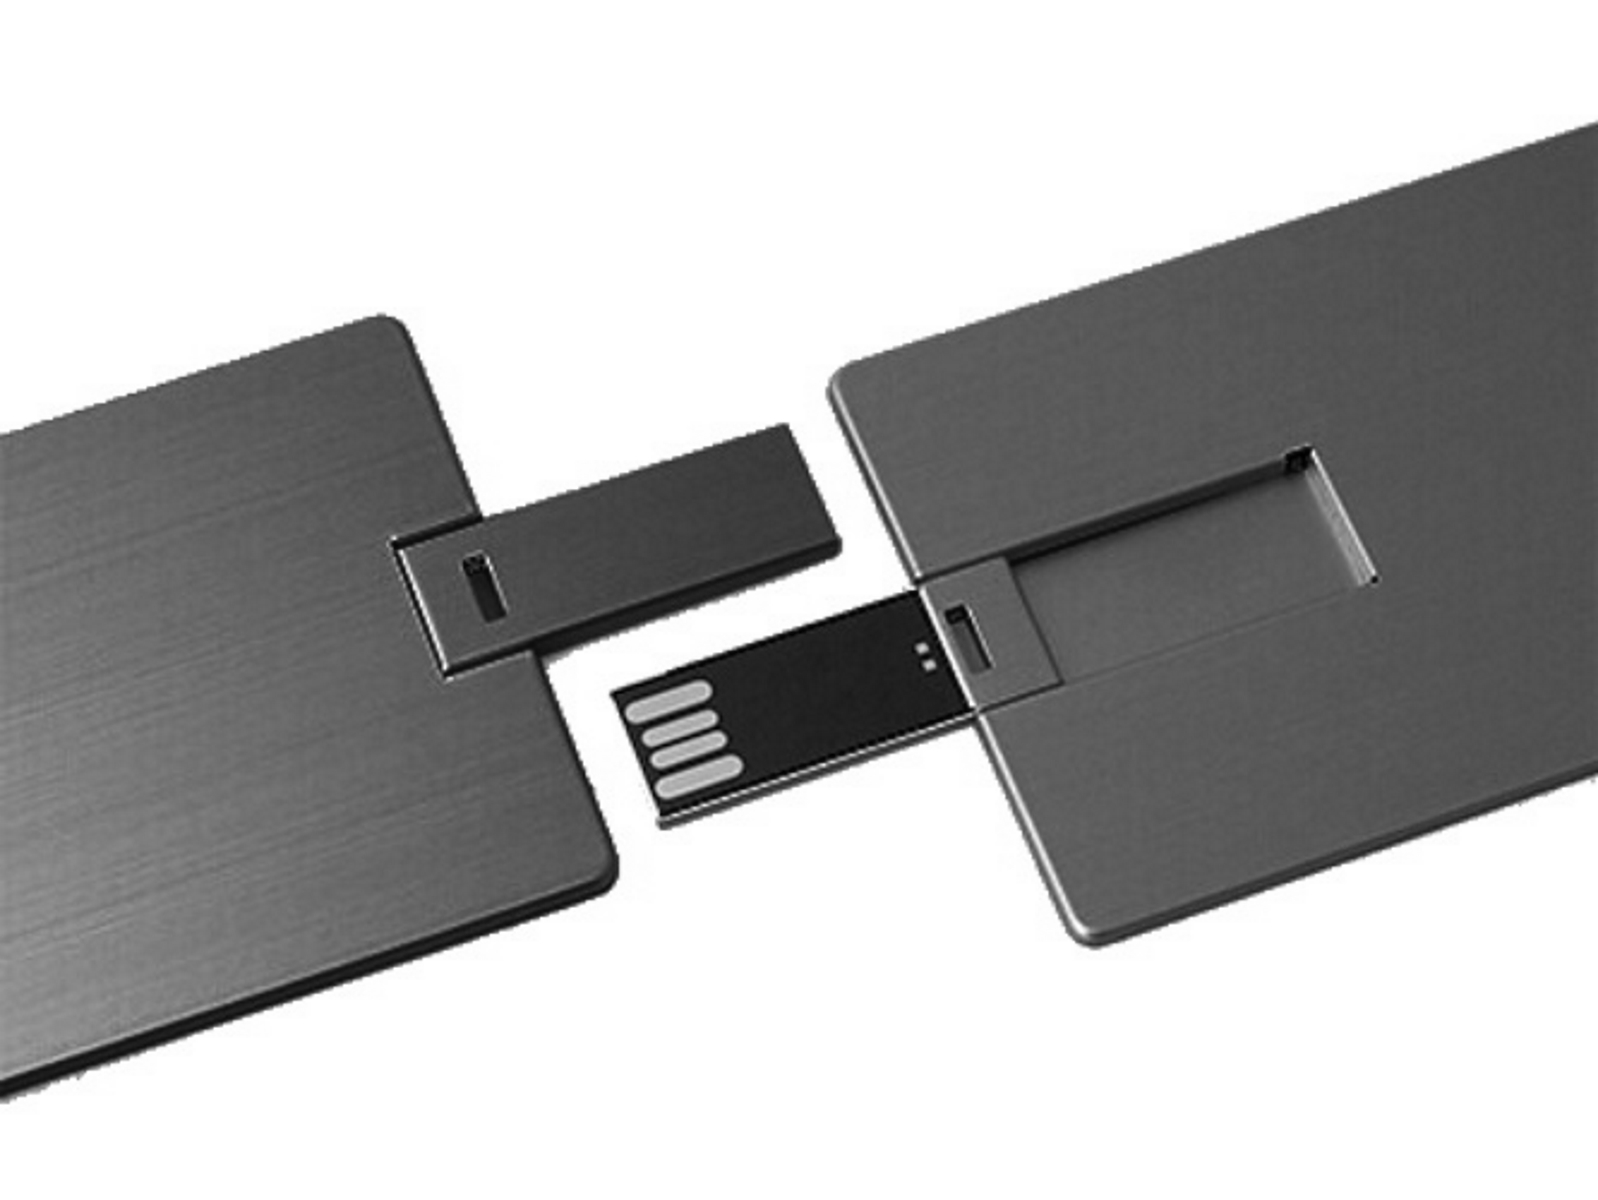 (Schwarz, GERMANY ® 64 USB-Stick Metall-Kreditkarte GB) USB